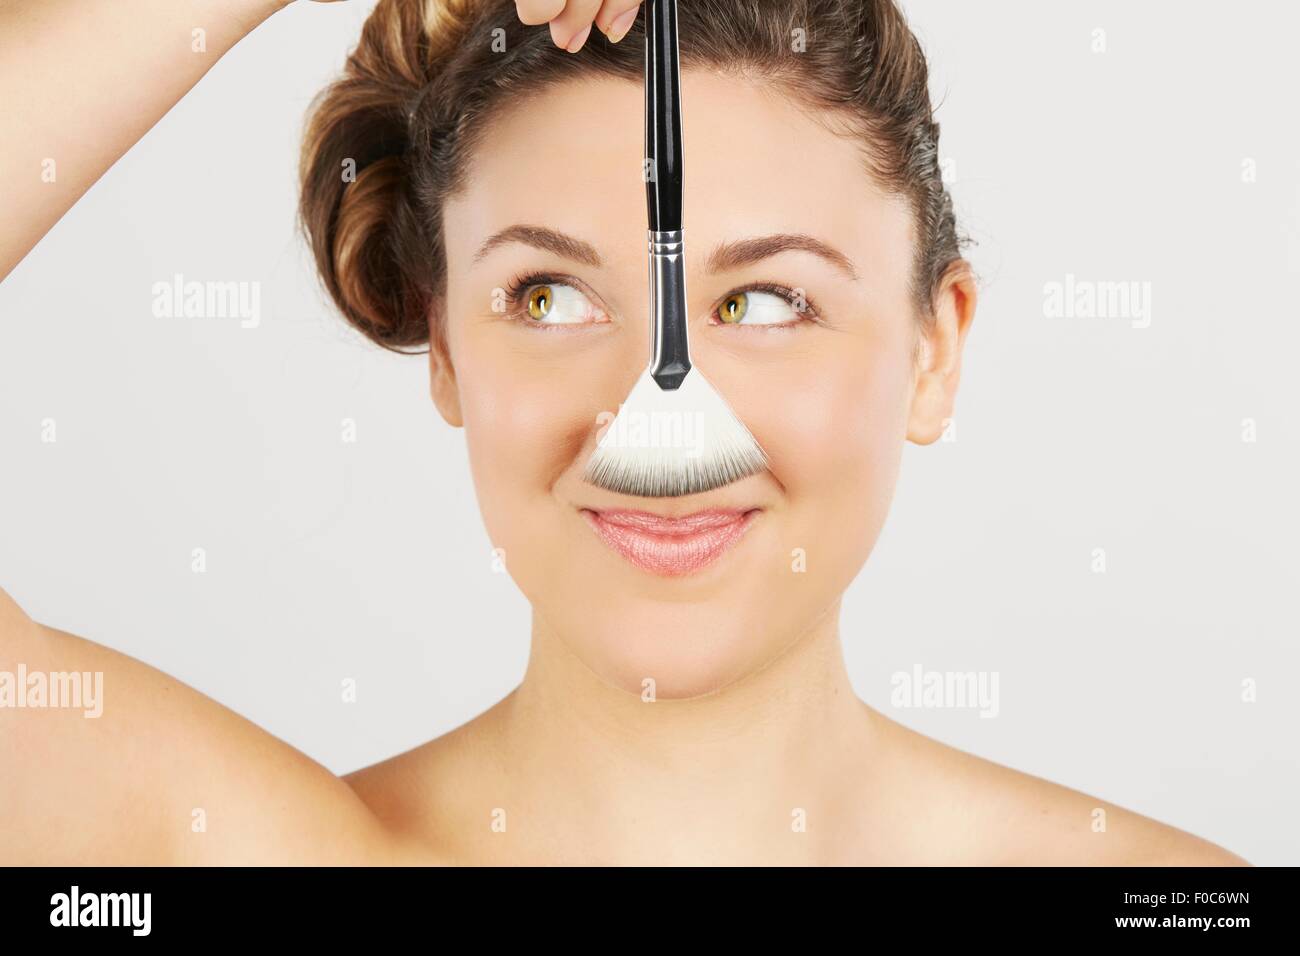 Jeune femme tenant une brosse de maquillage Banque D'Images